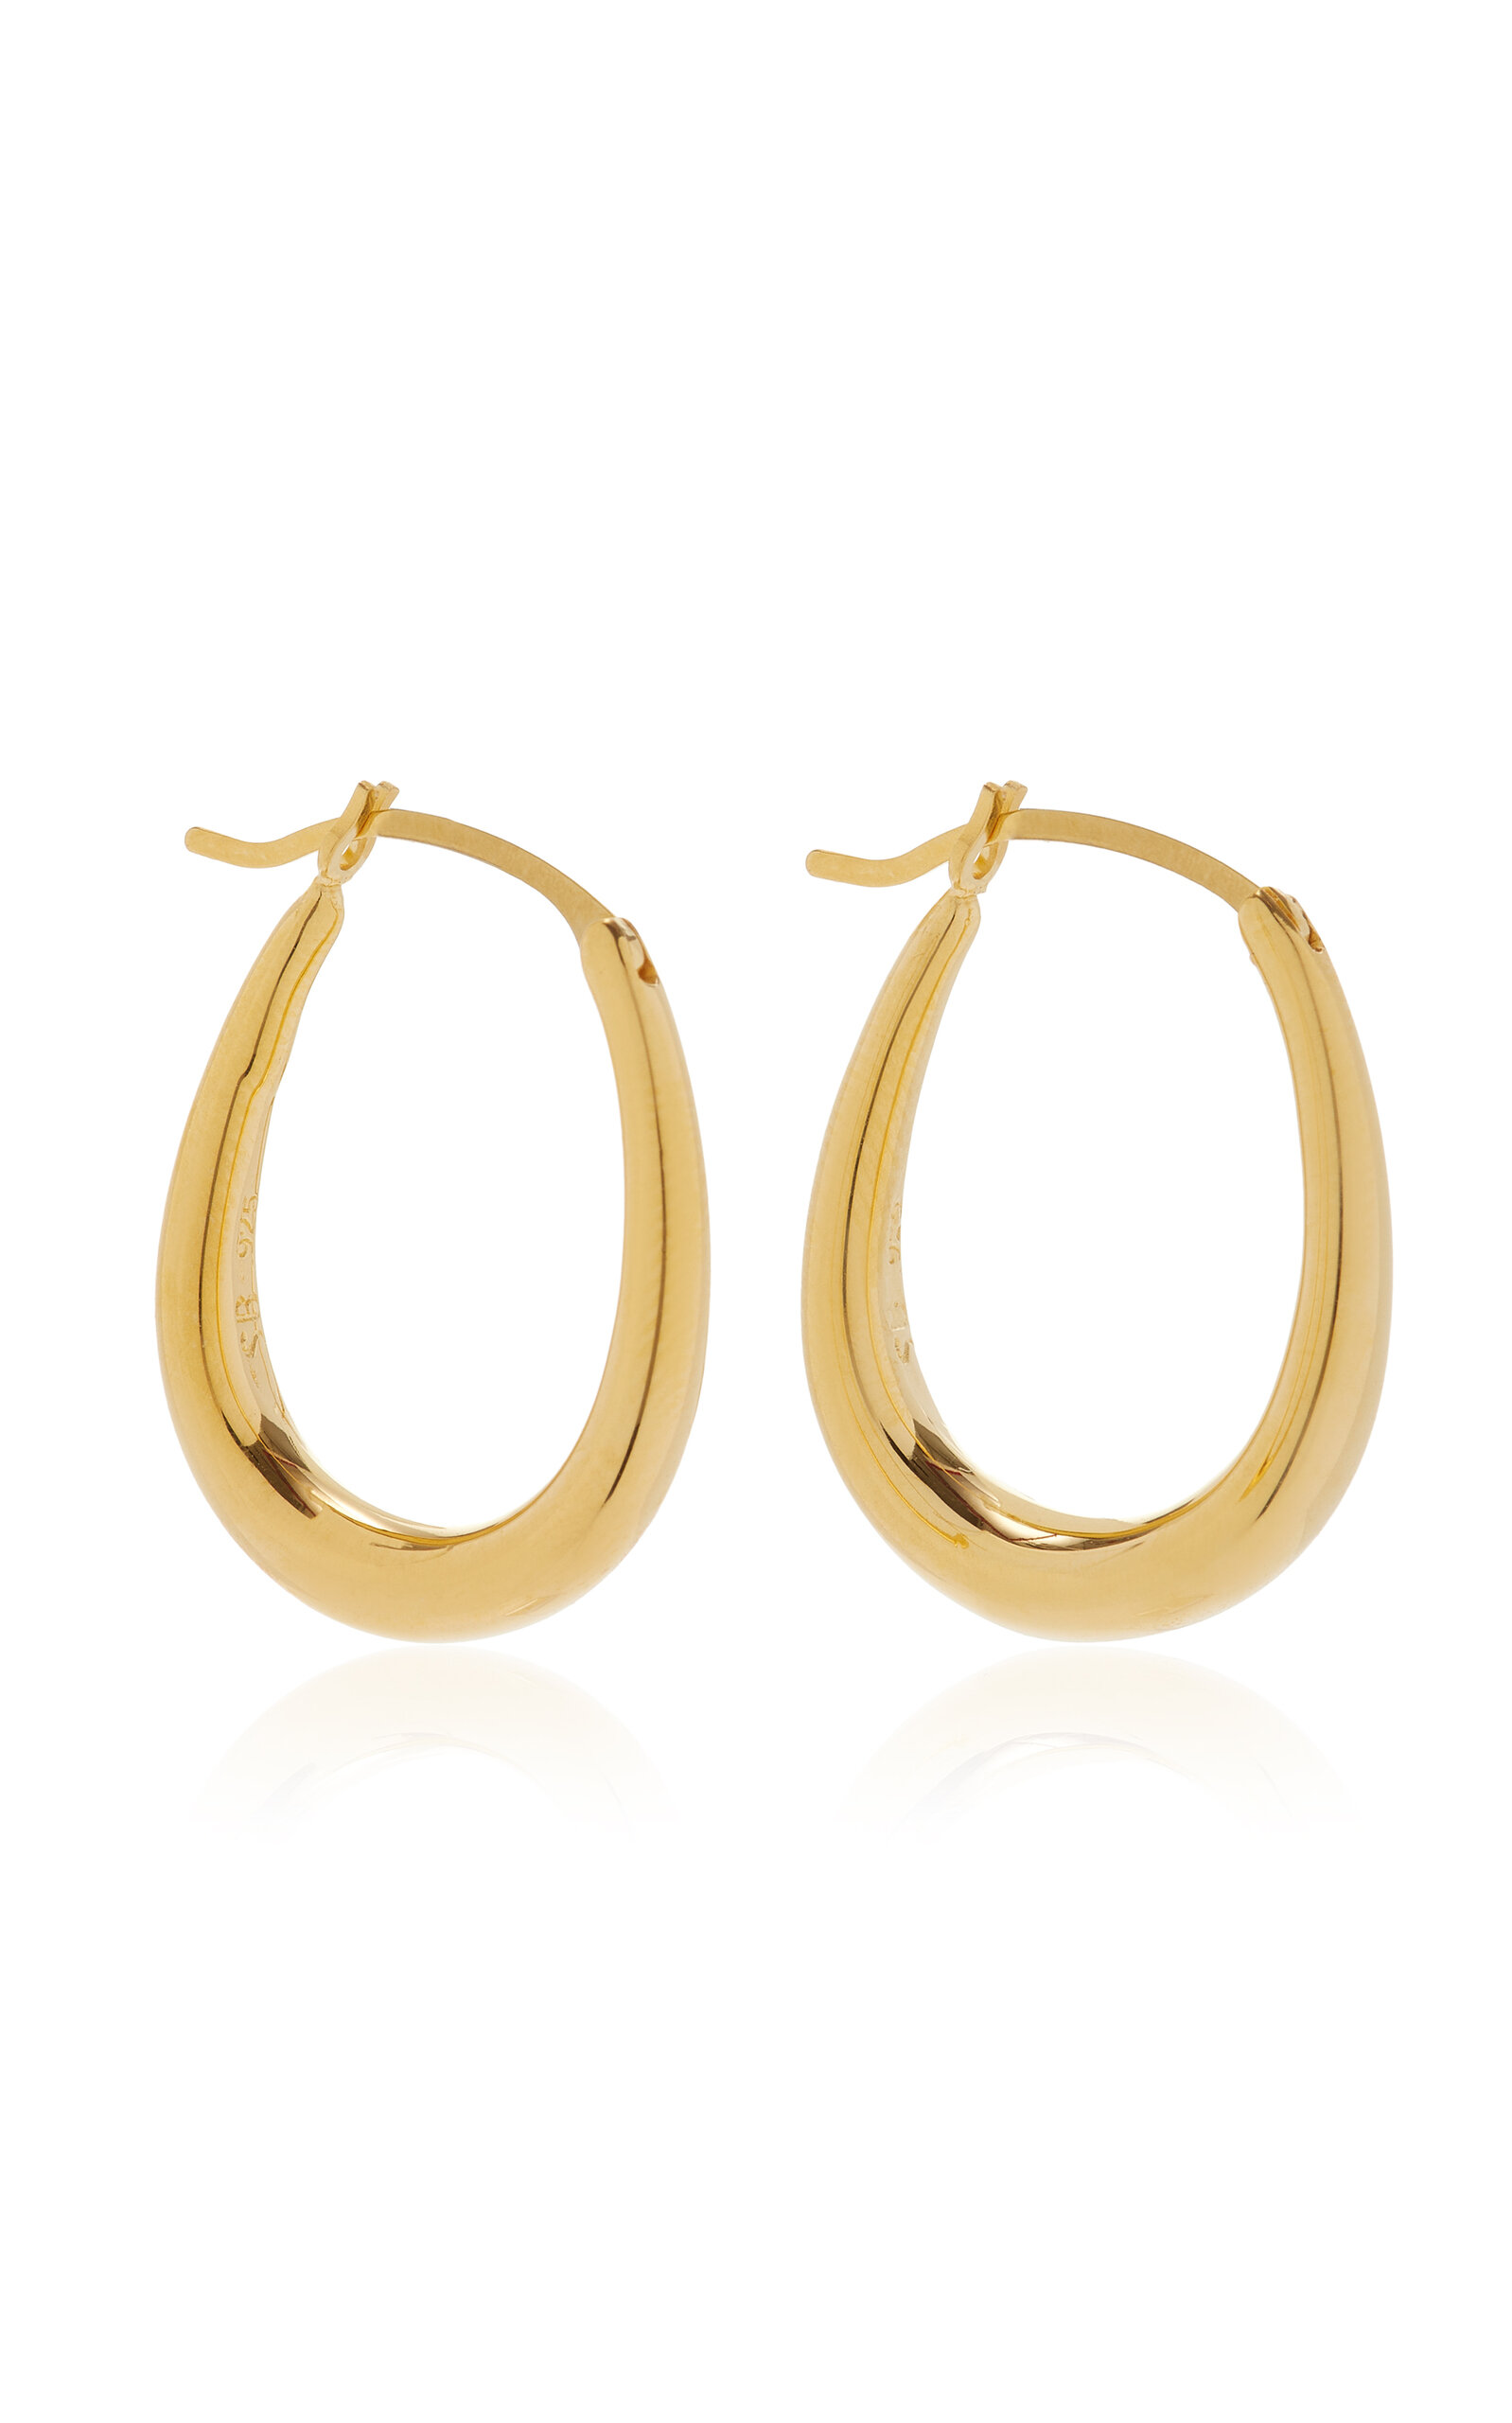 Sophie Buhai Tiny Egg k Gold Vermeil Hoop Earrings   ModeSens